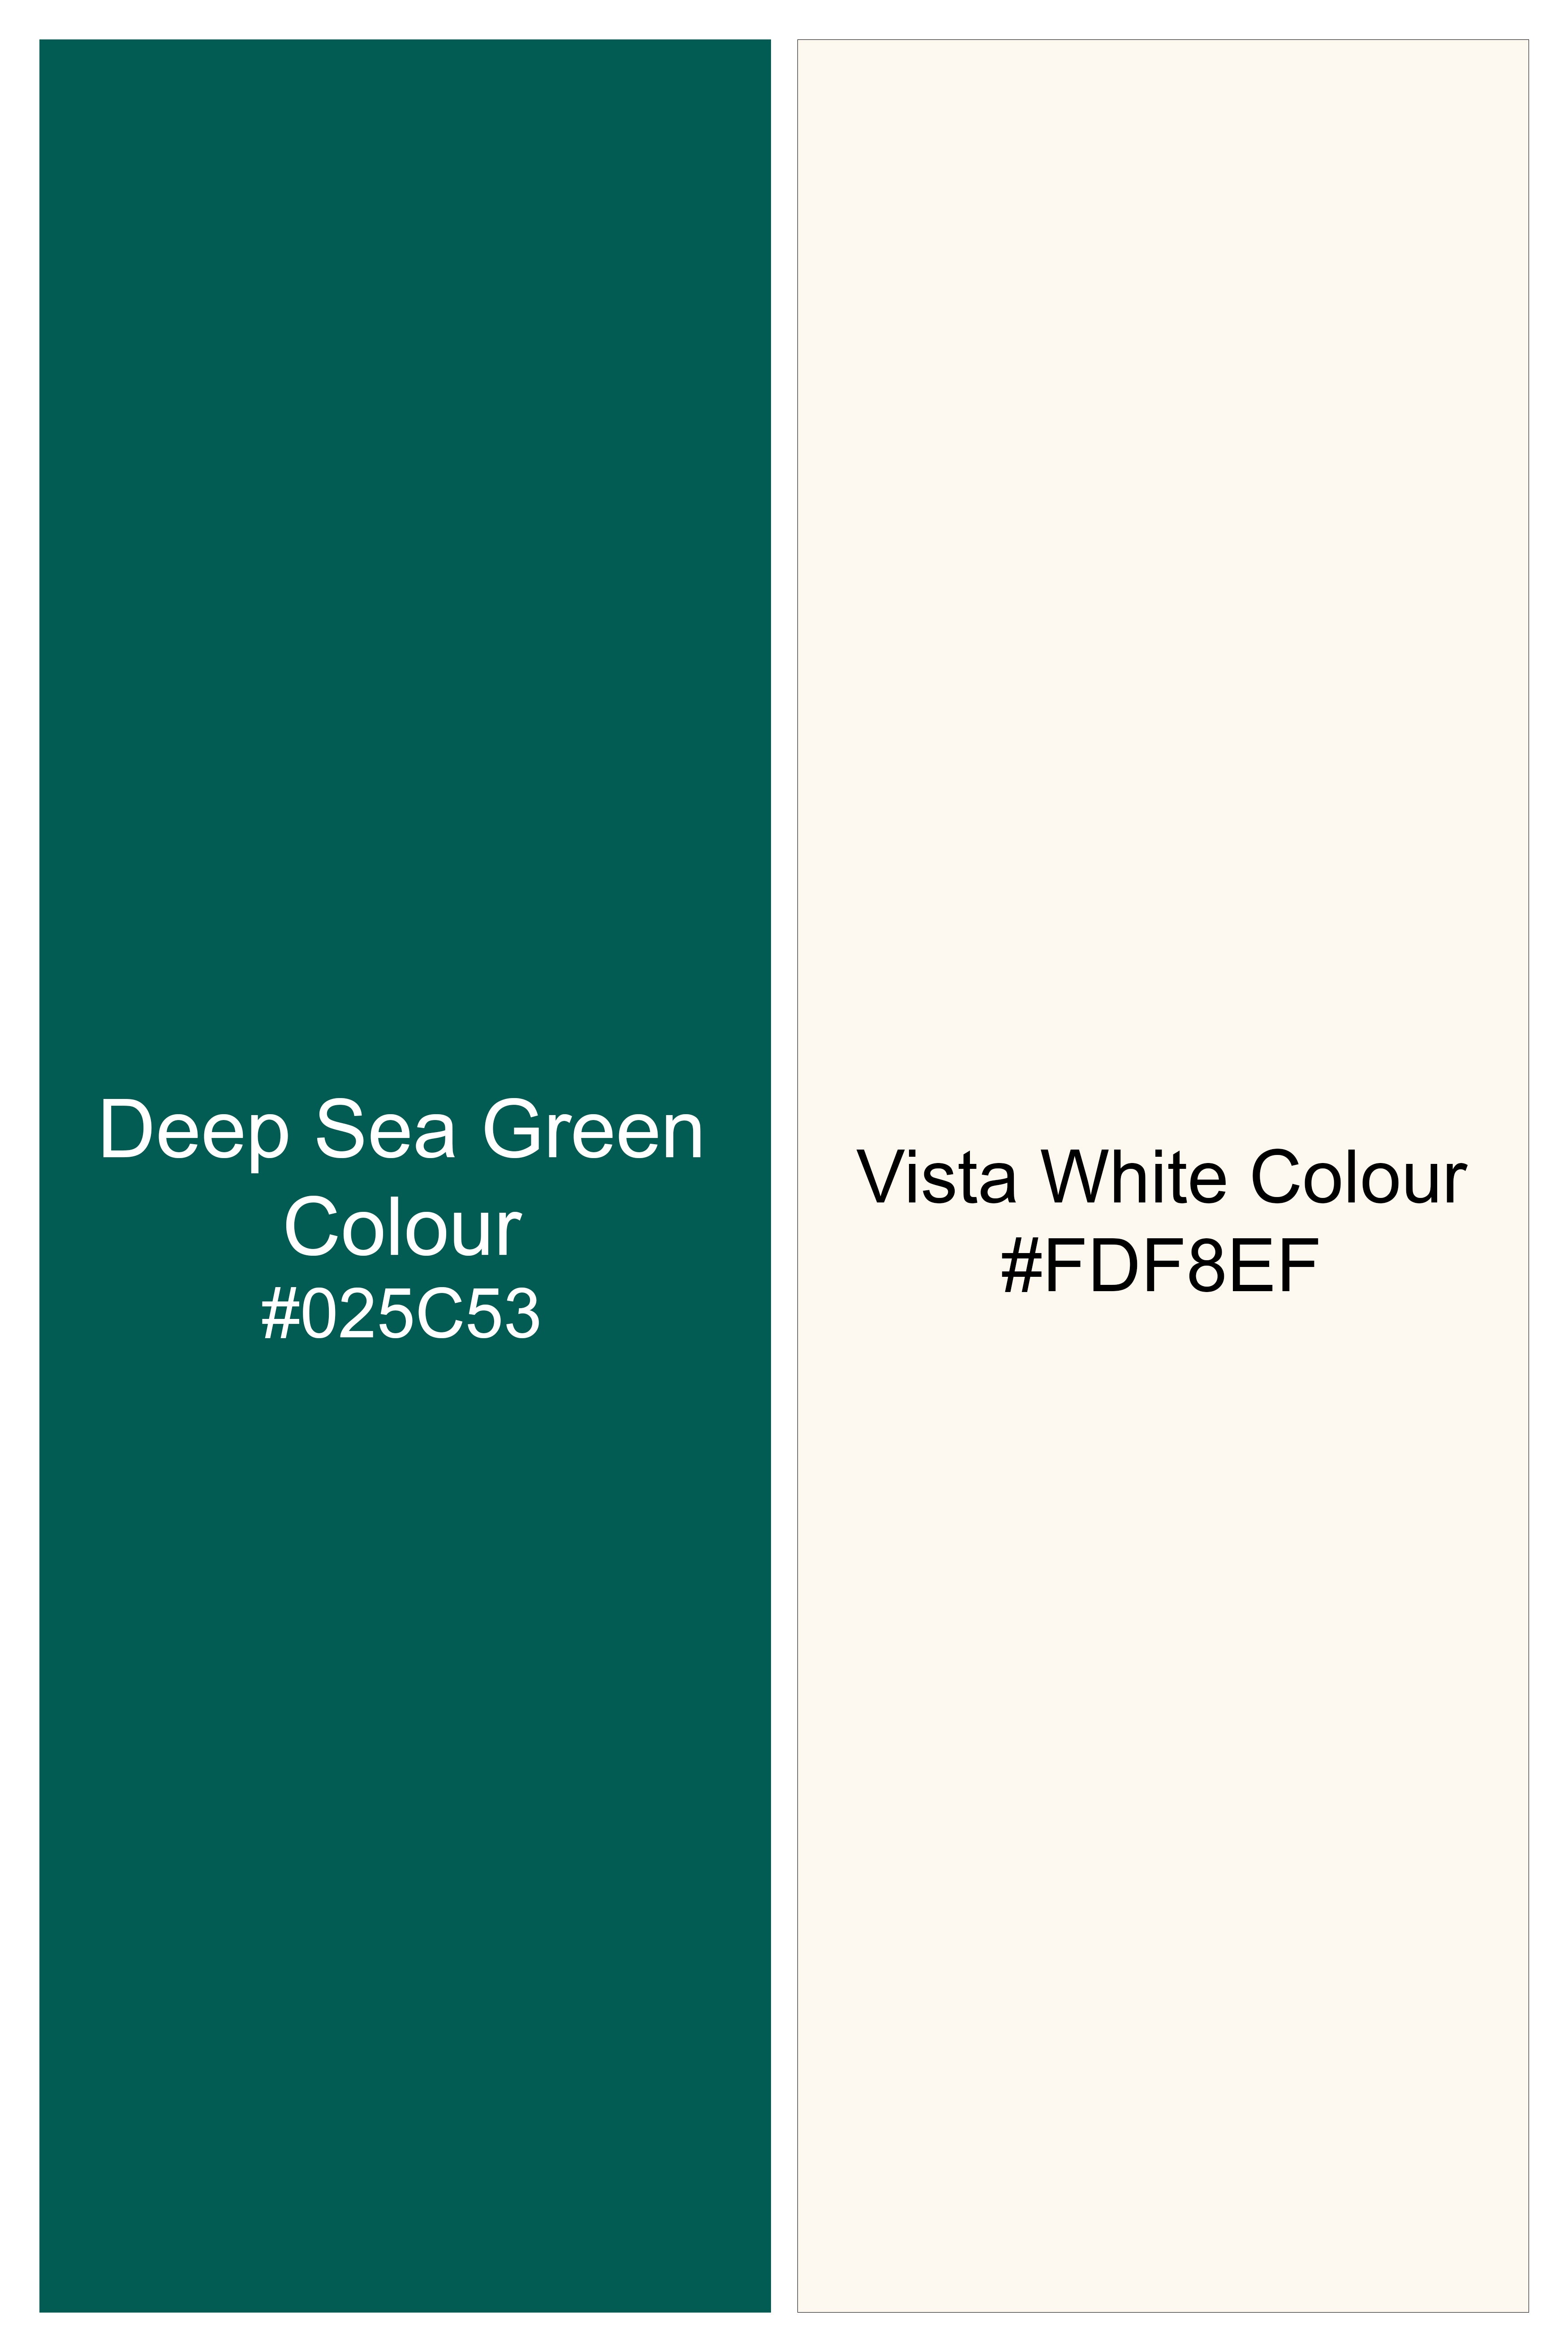 Deep Sea Green with Vista White Plaid Flannel Shirt